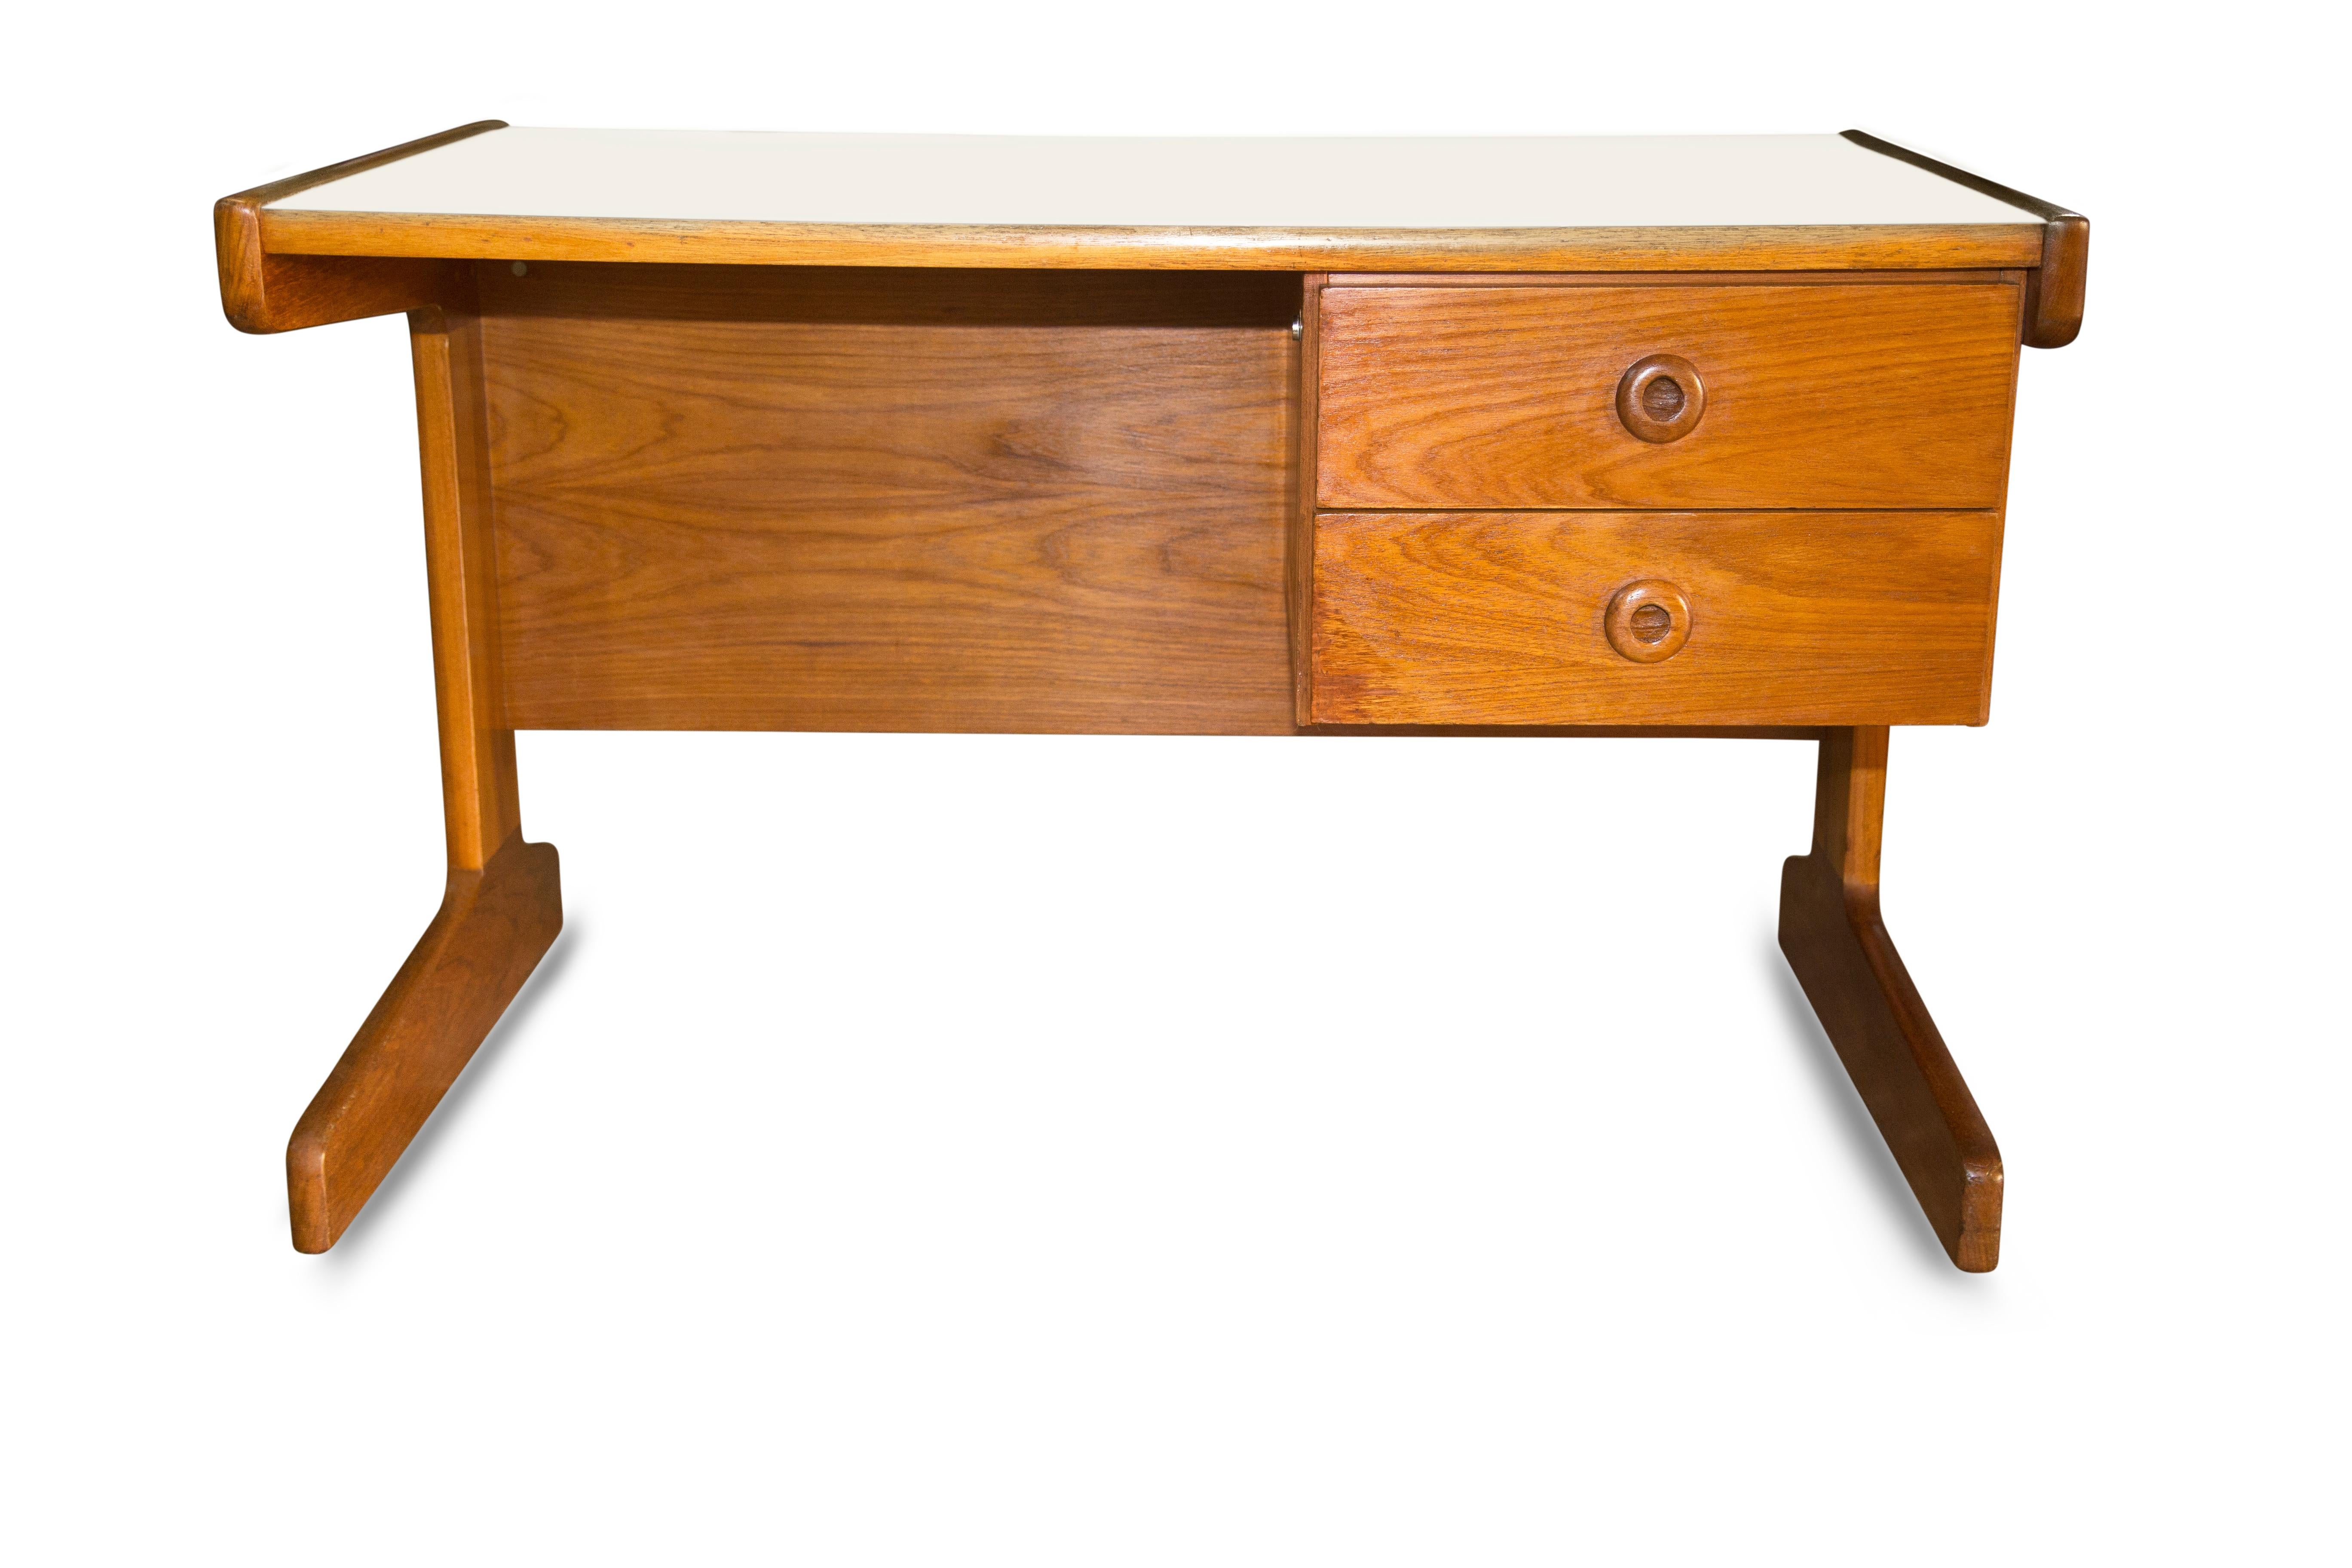 Brazilian Modern Desk in Cerejera Hardwood, Geraldo de Barros, 1970s Brazil In Good Condition For Sale In New York, NY